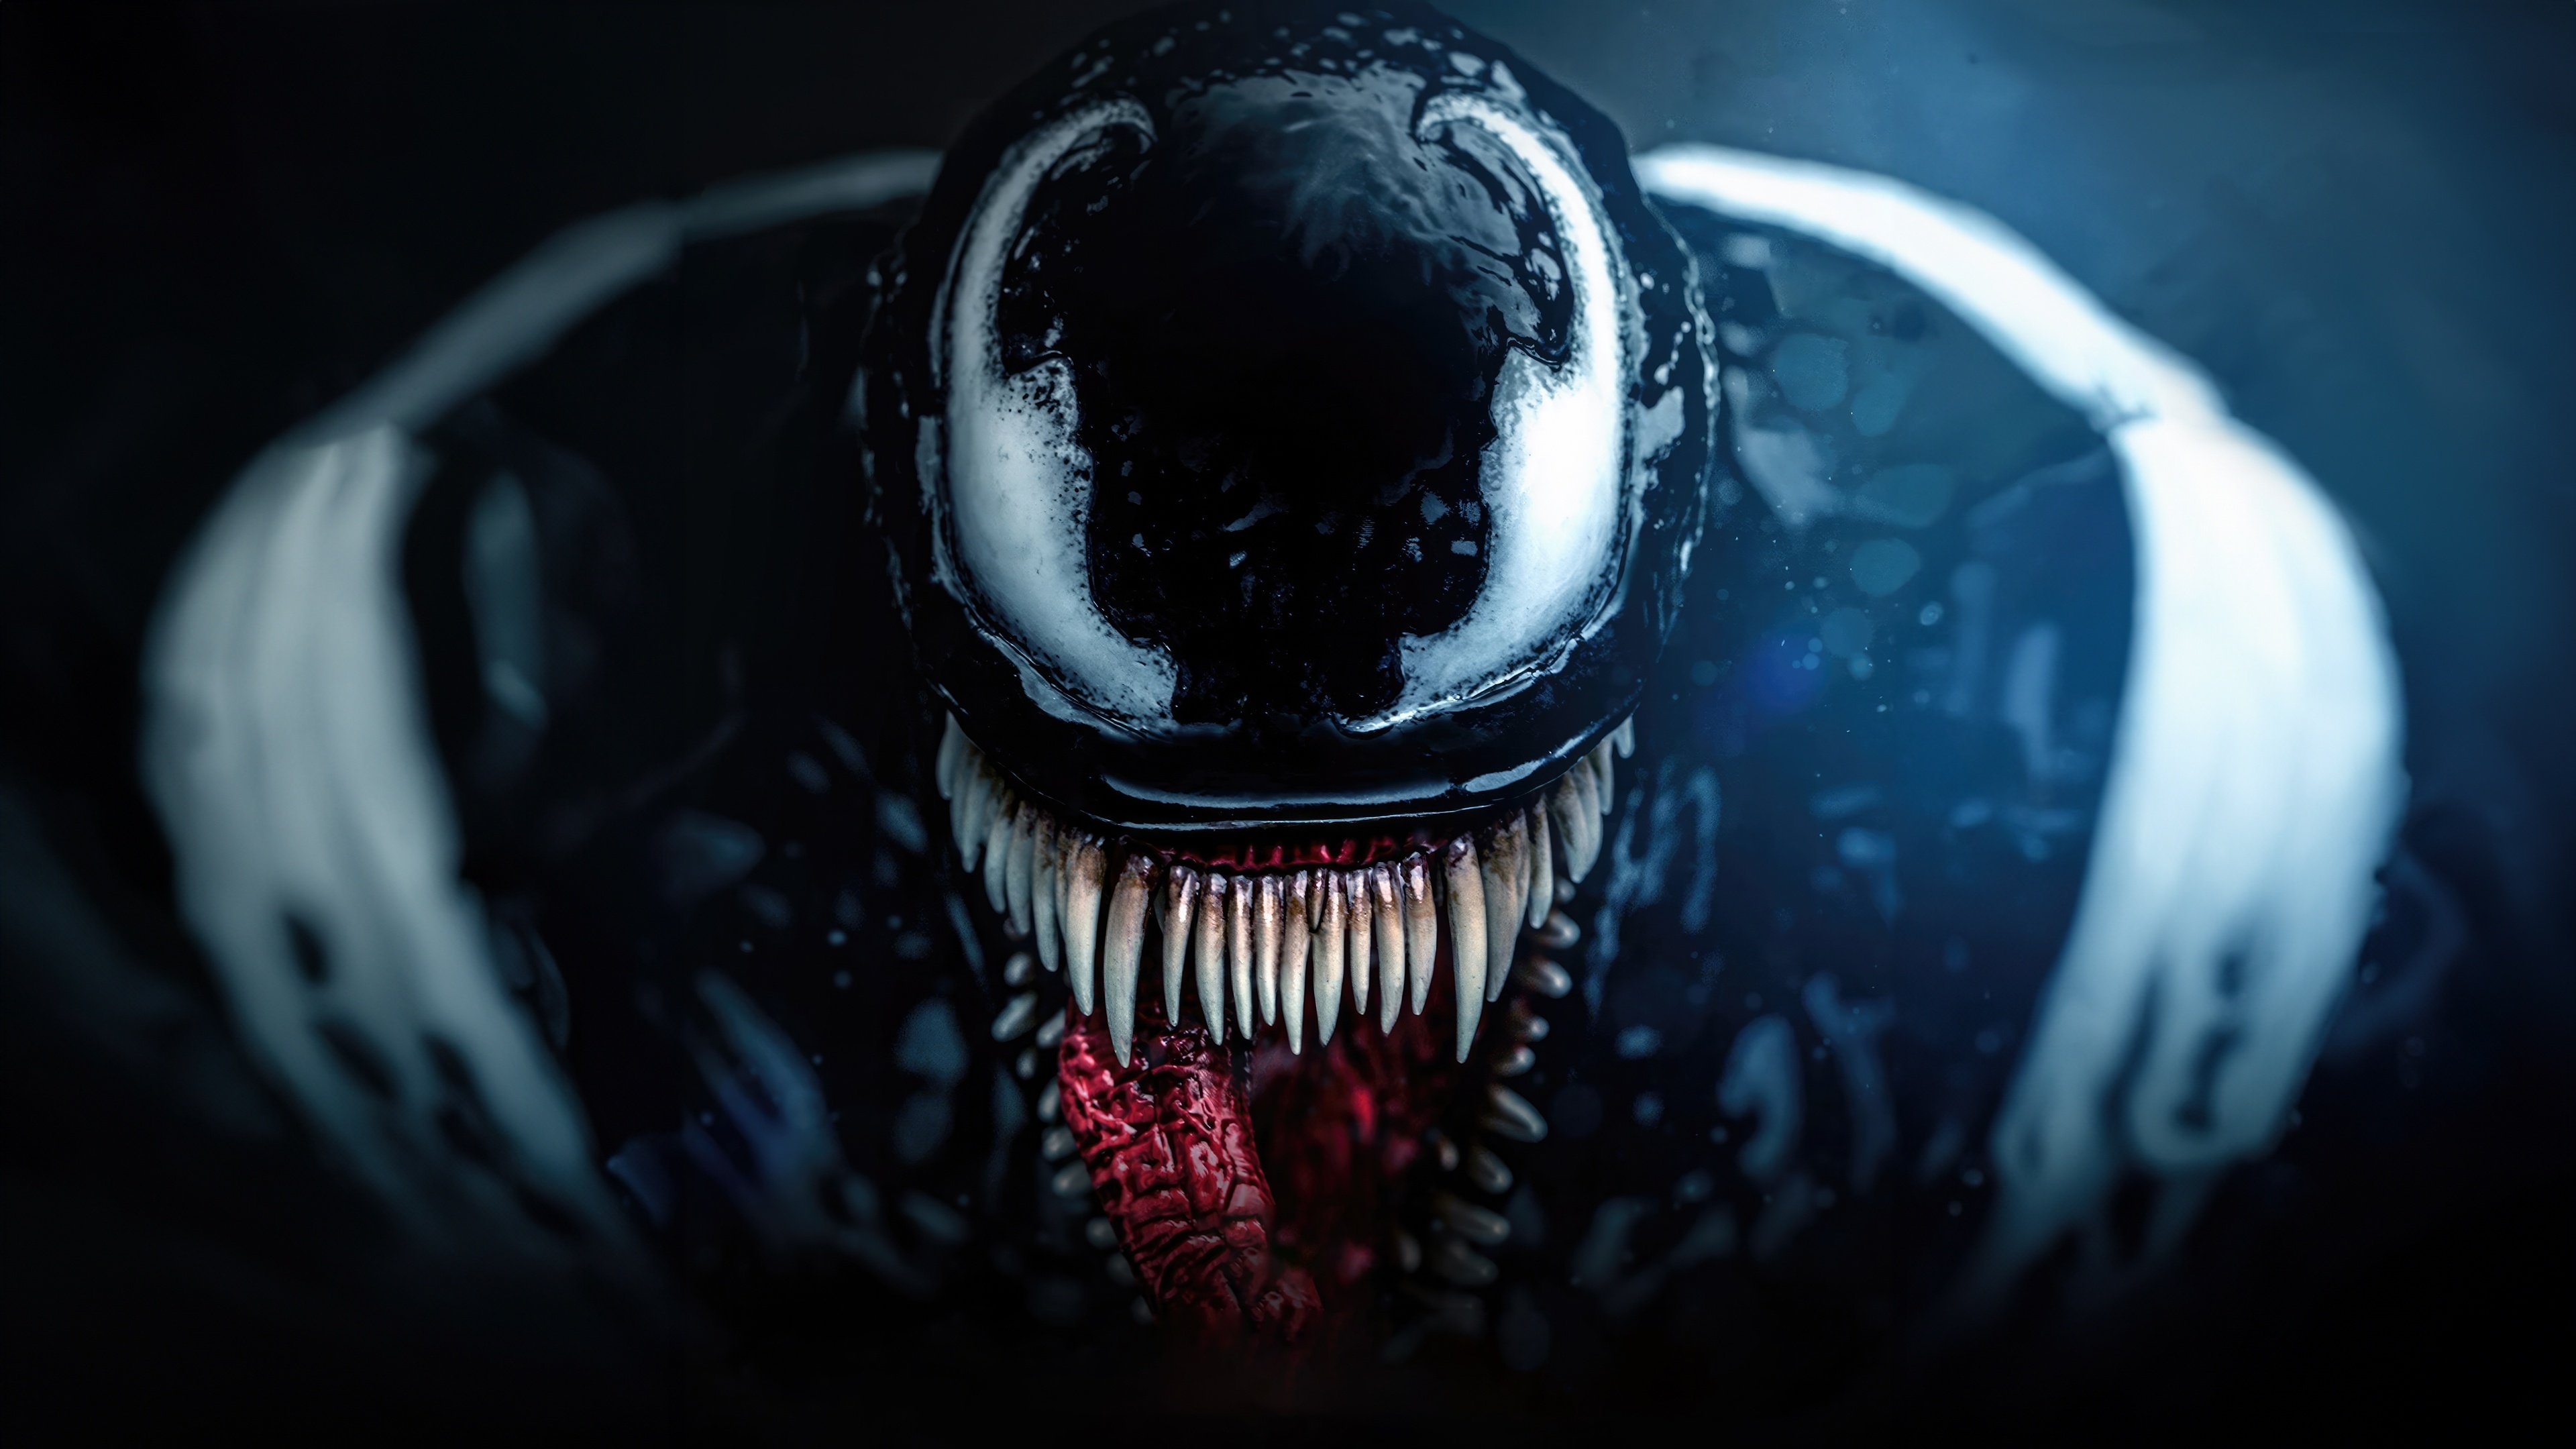 Fondos de pantalla Venom from Marvel Spider Man 2